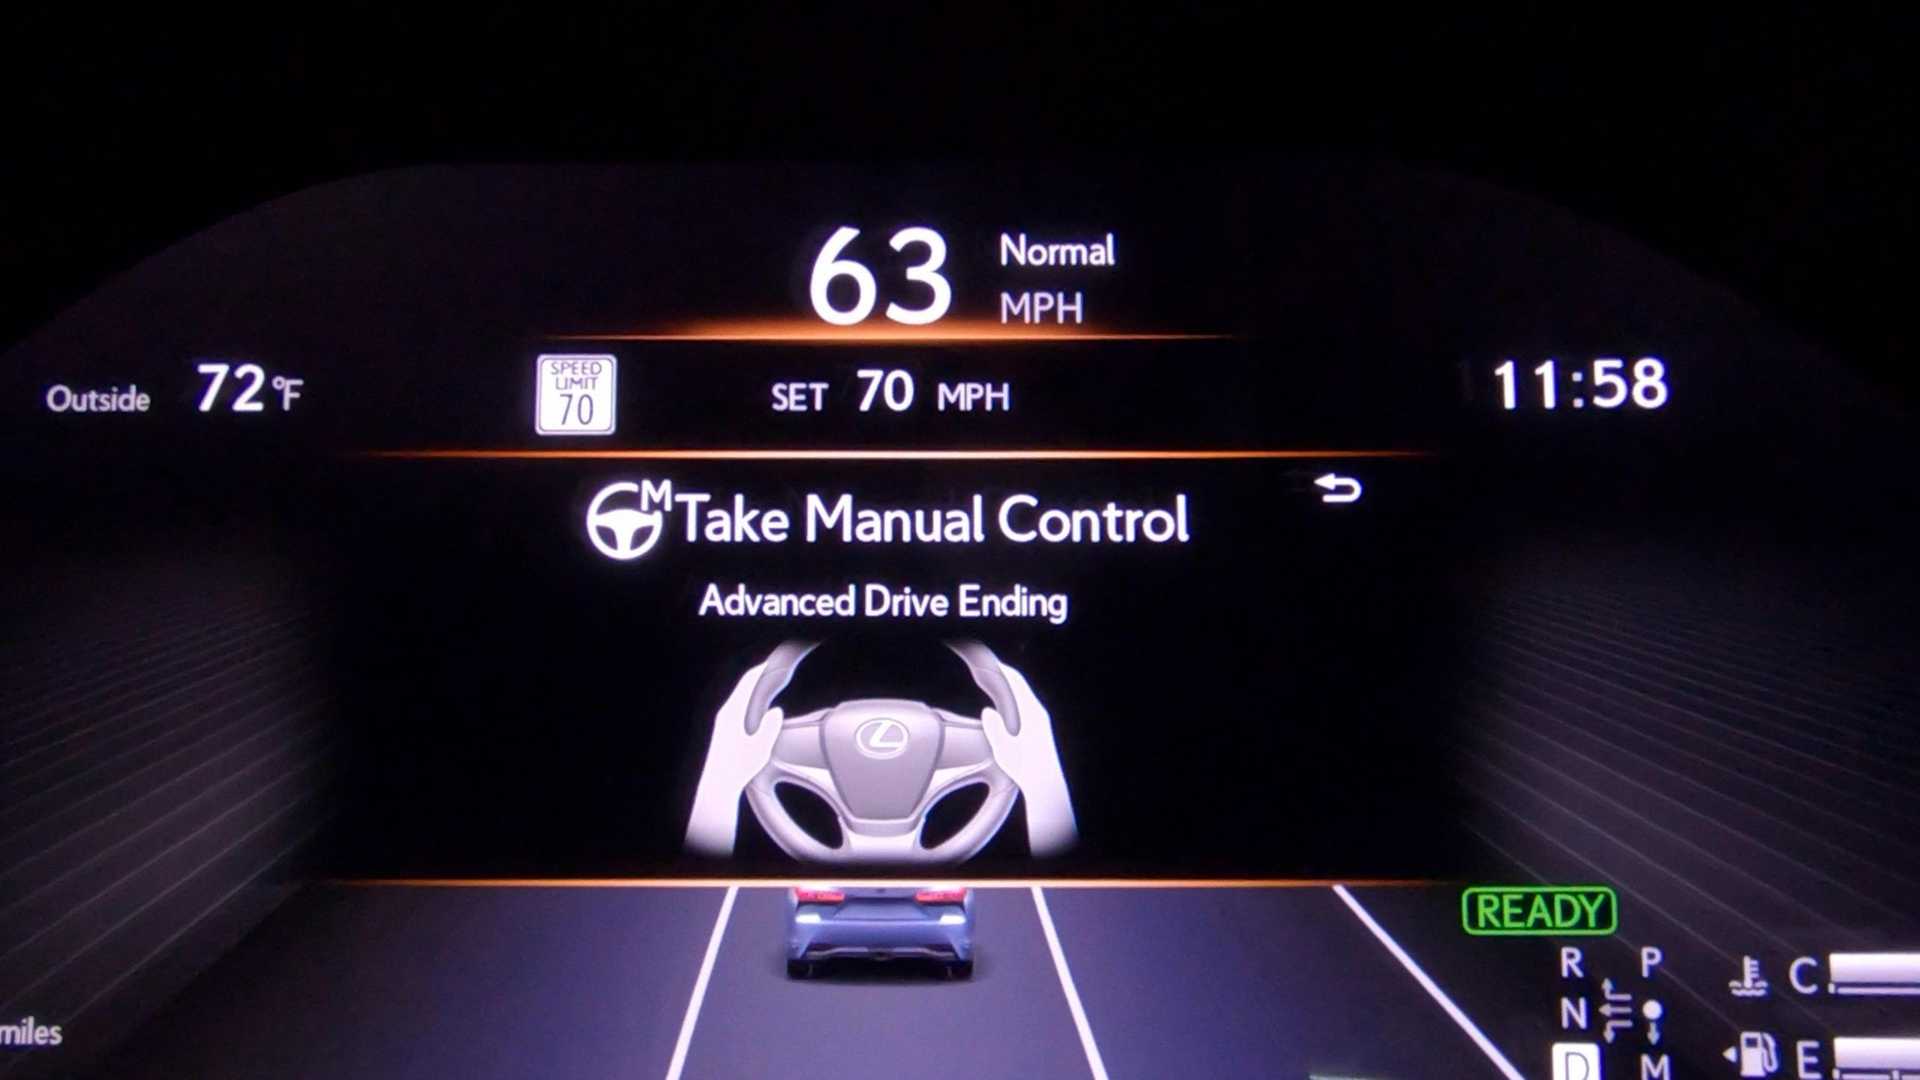 نمایشگر جلوداشبورد خودرو لکسوس ال اس مجهز به فناوری خودران / Lexus Teammate Advanced Drive